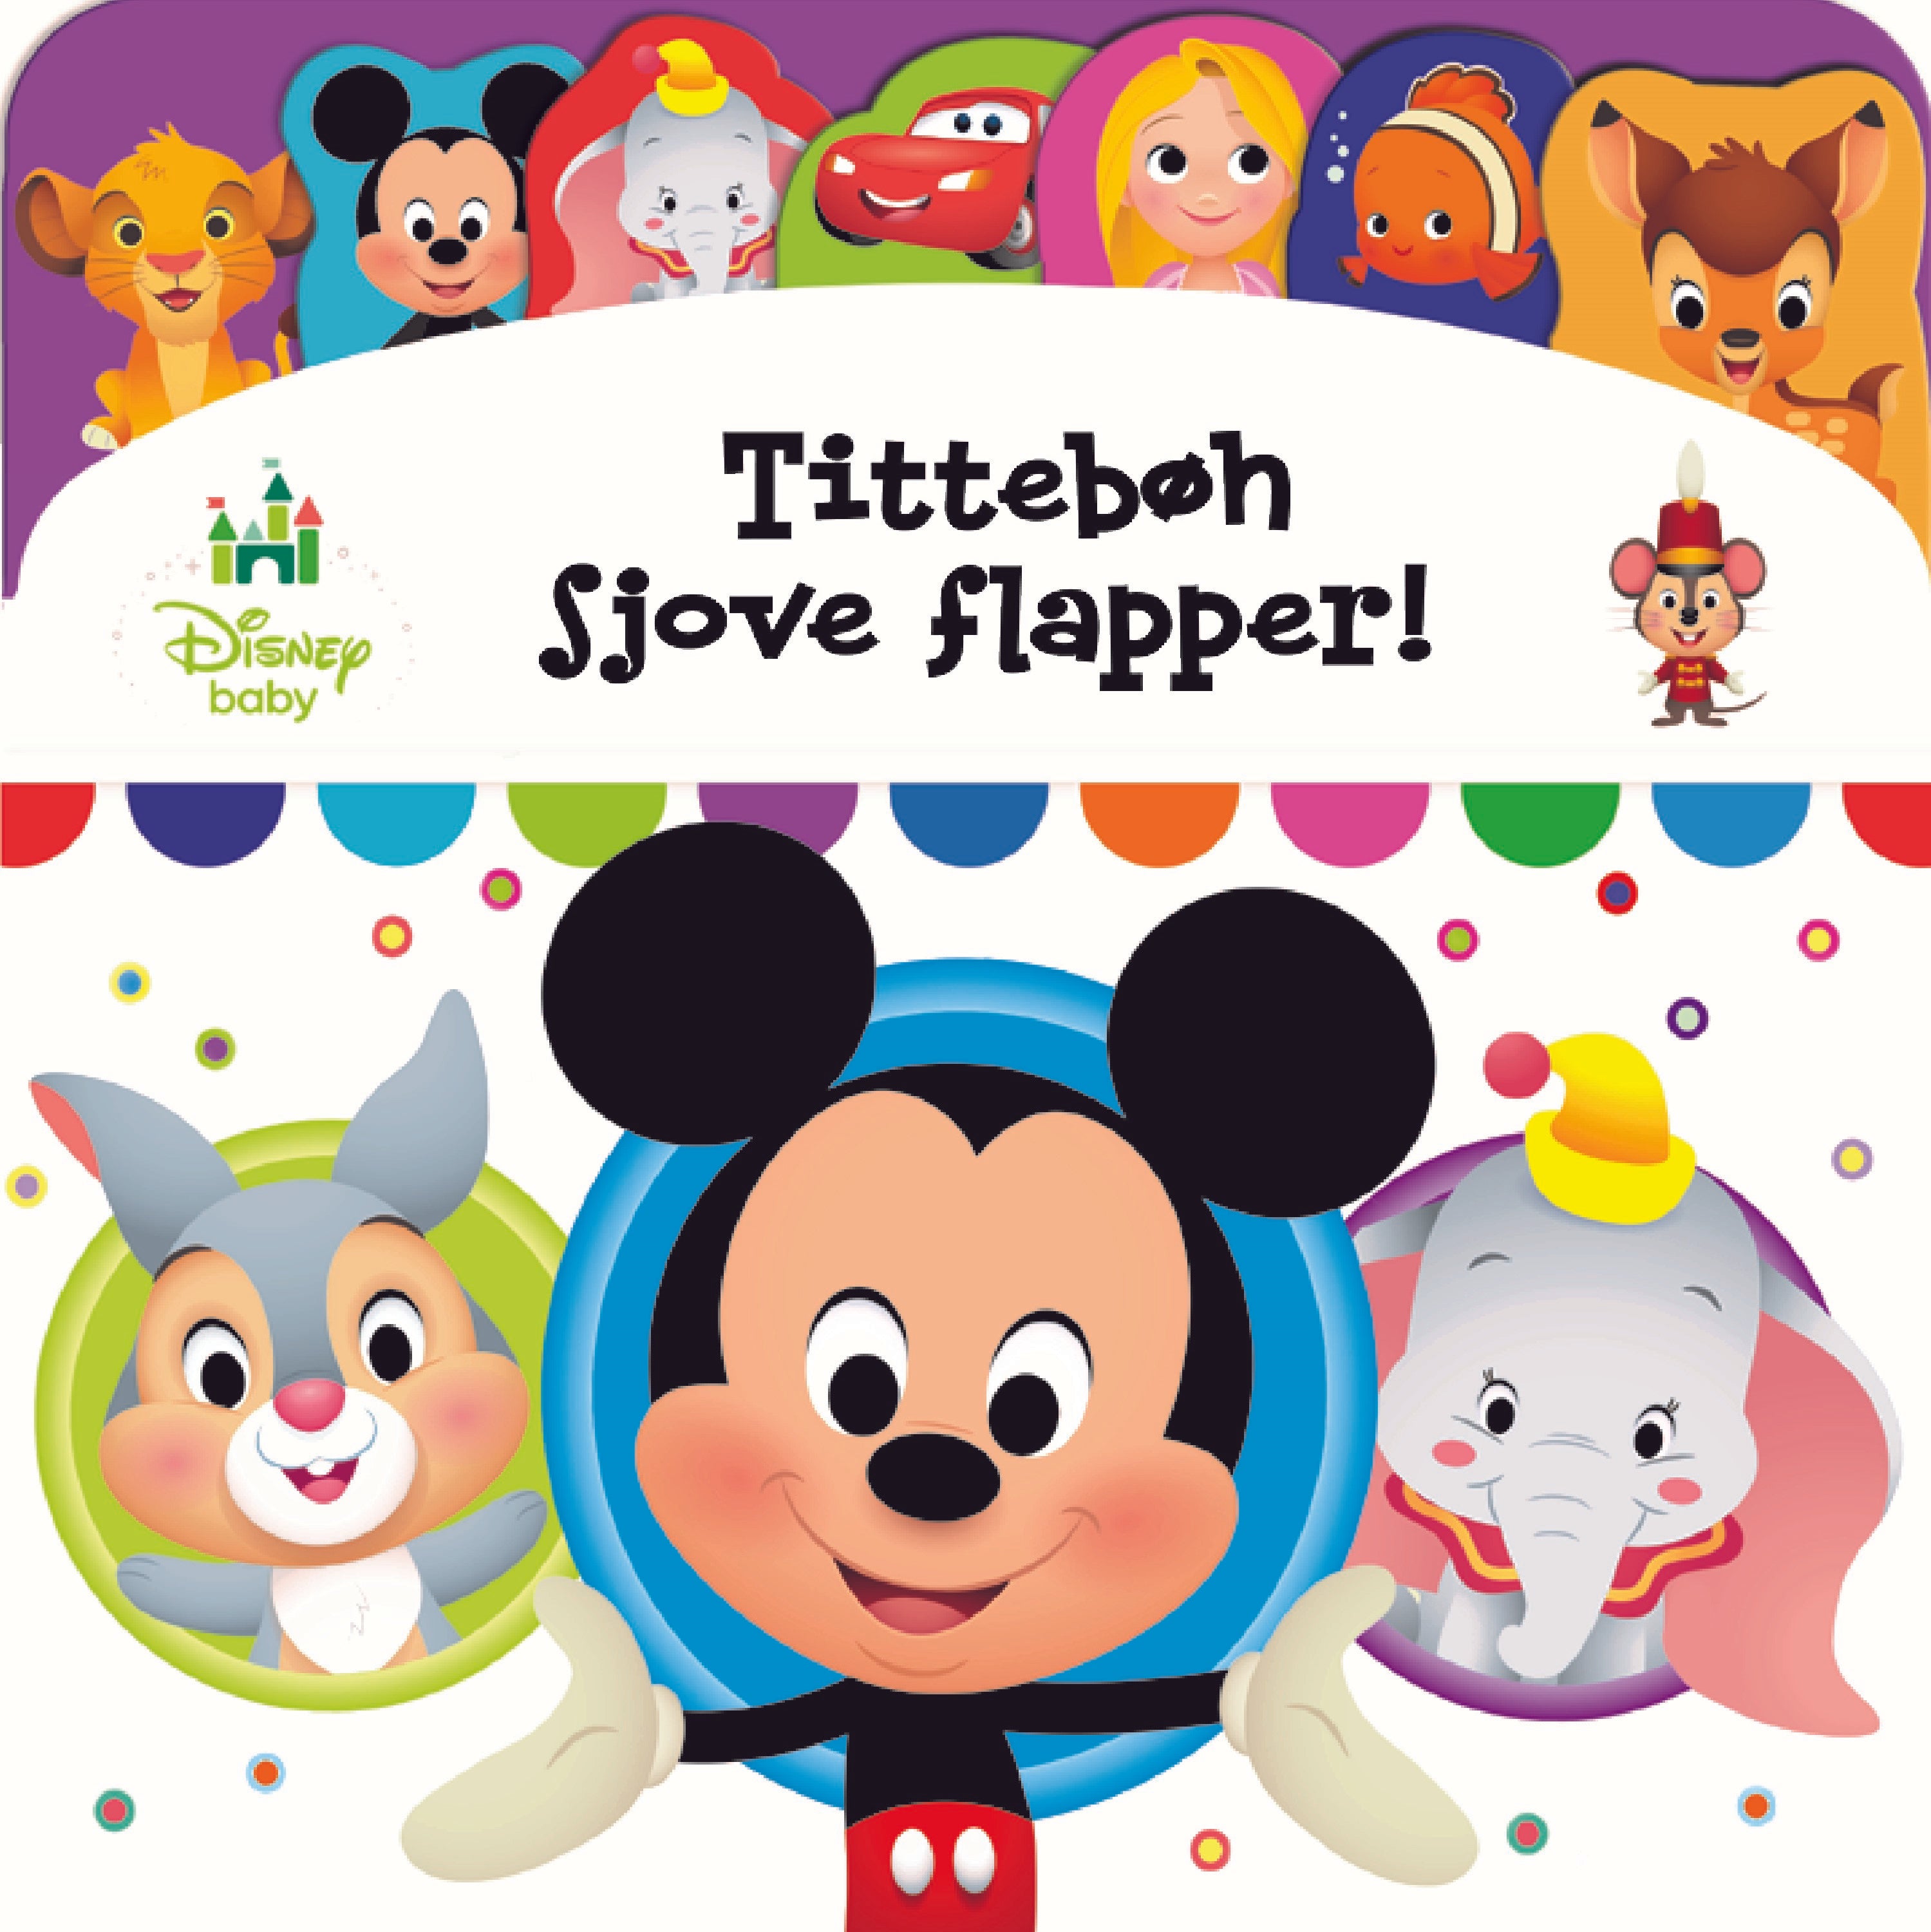 Forside til bogen Disney Baby - Tittebøh sjove flapper - Kig og find